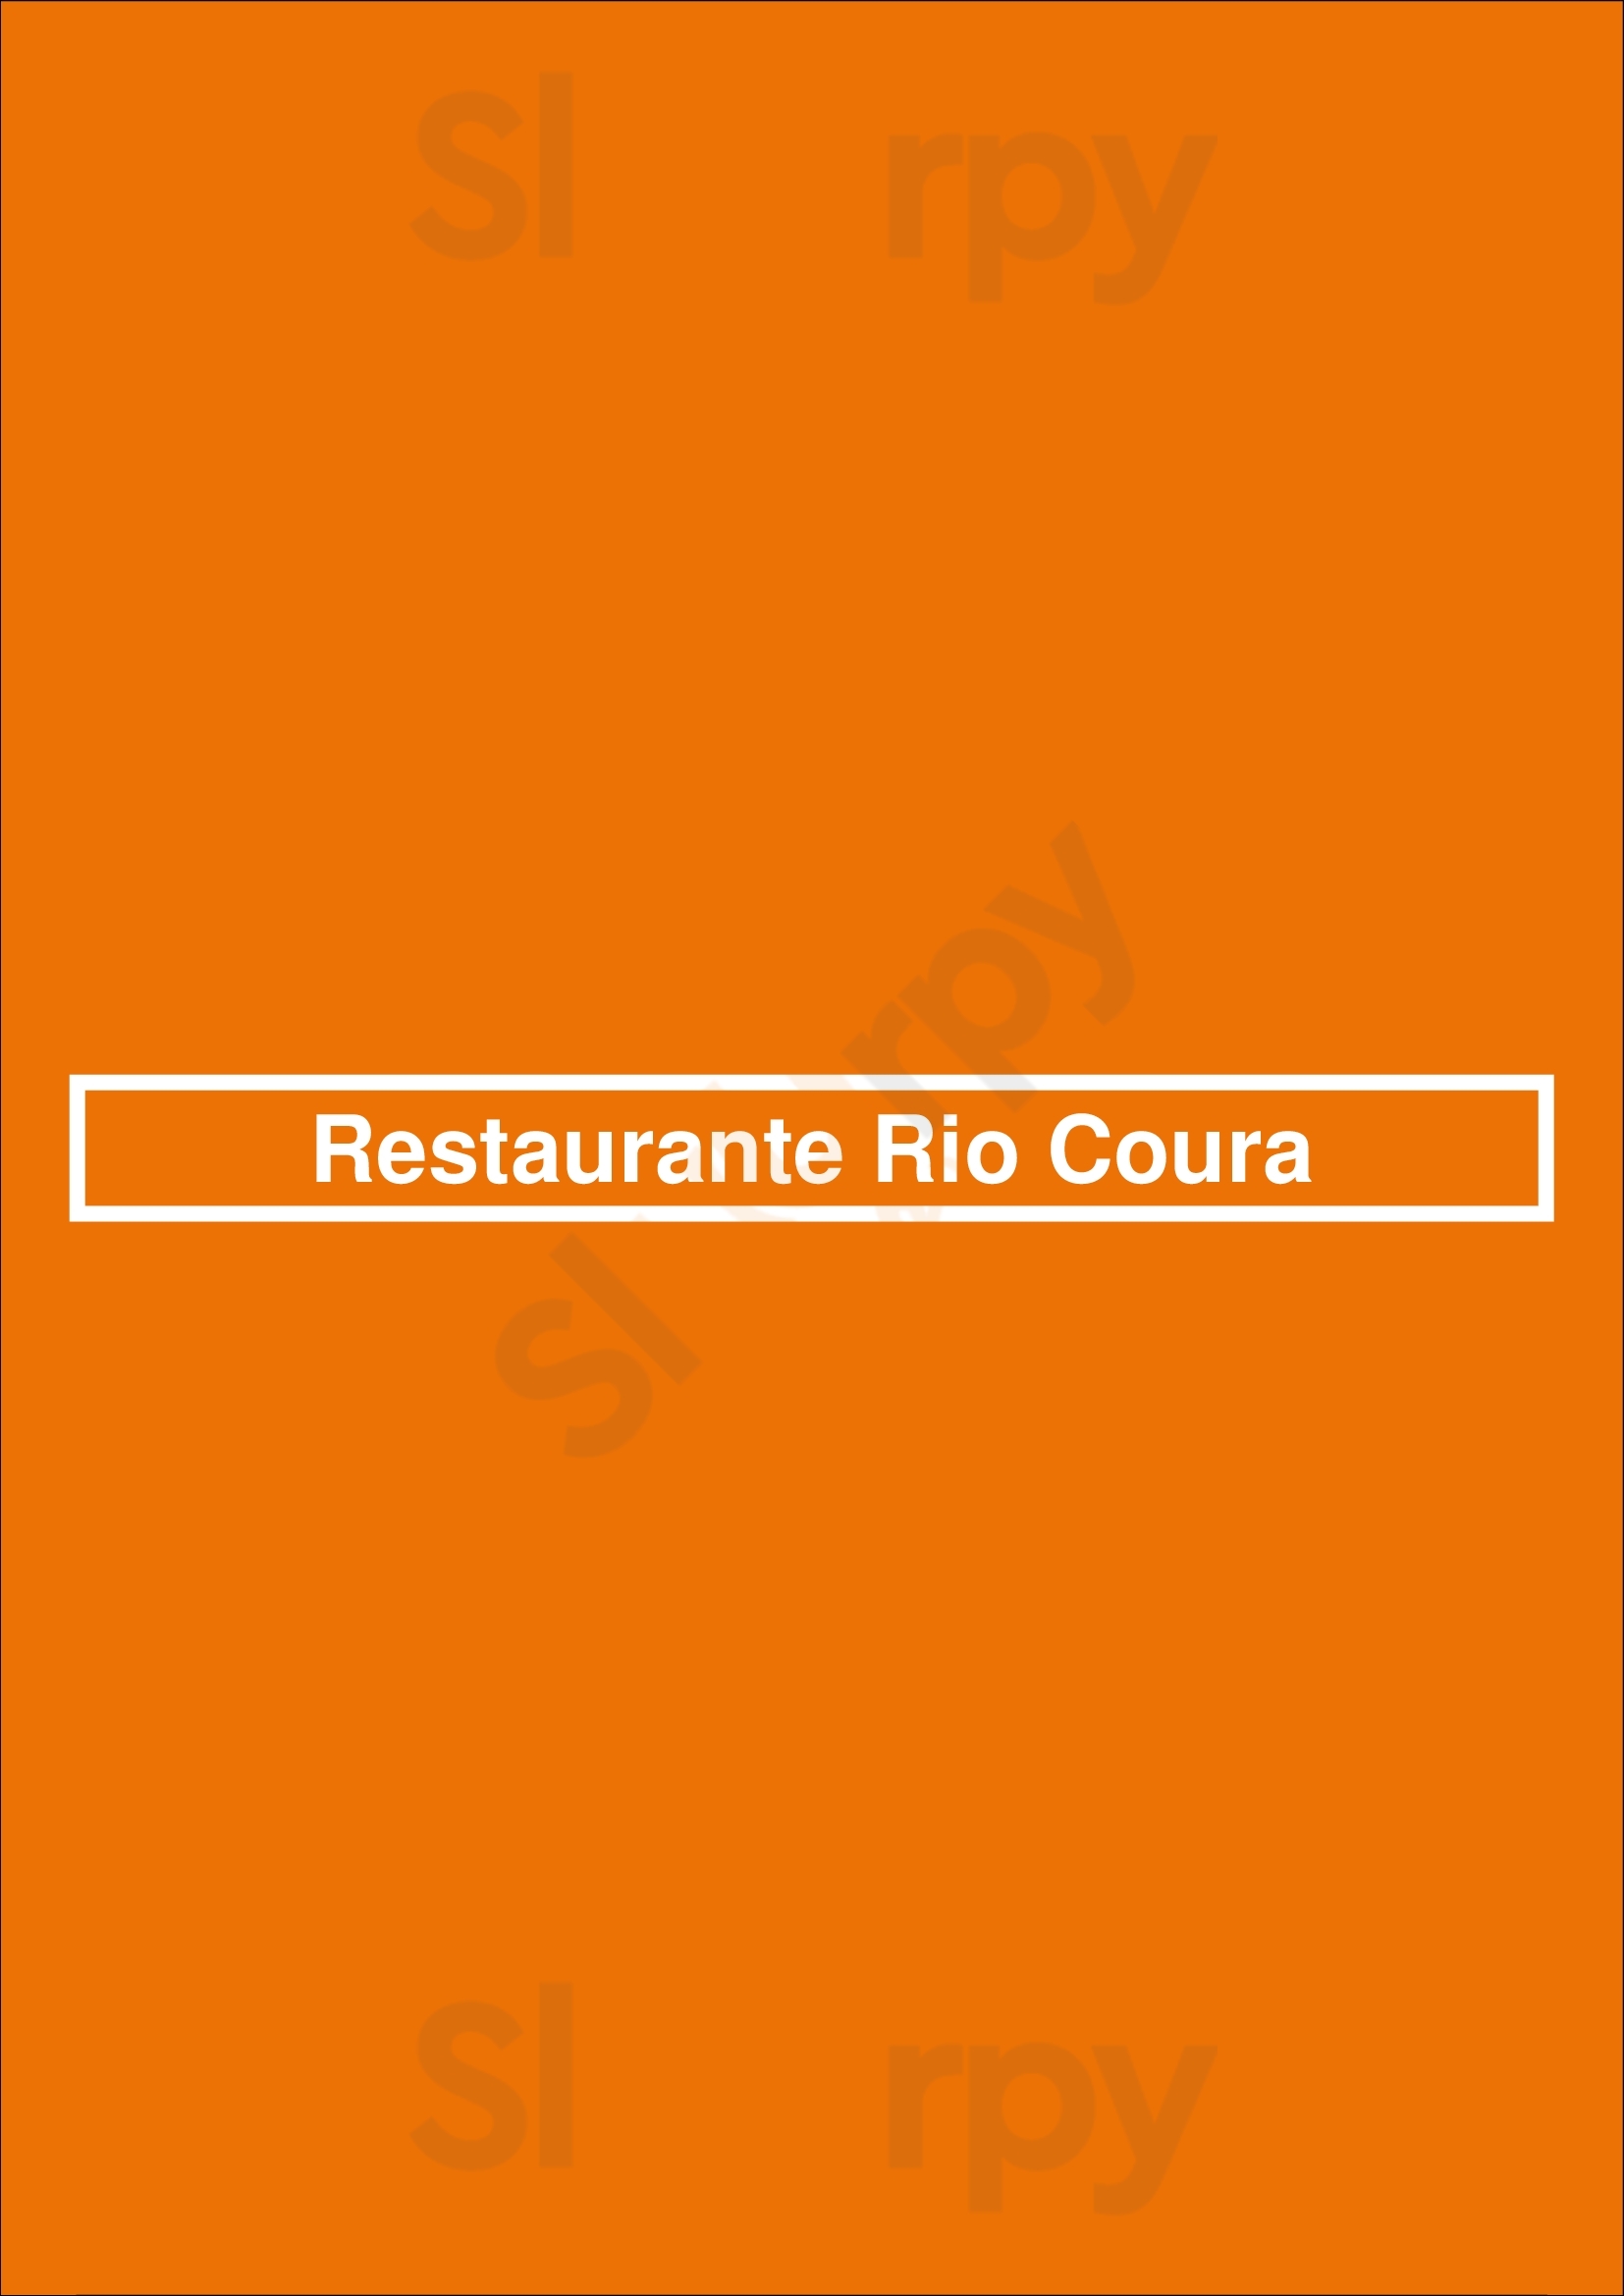 Restaurante Rio Coura Lisboa Menu - 1